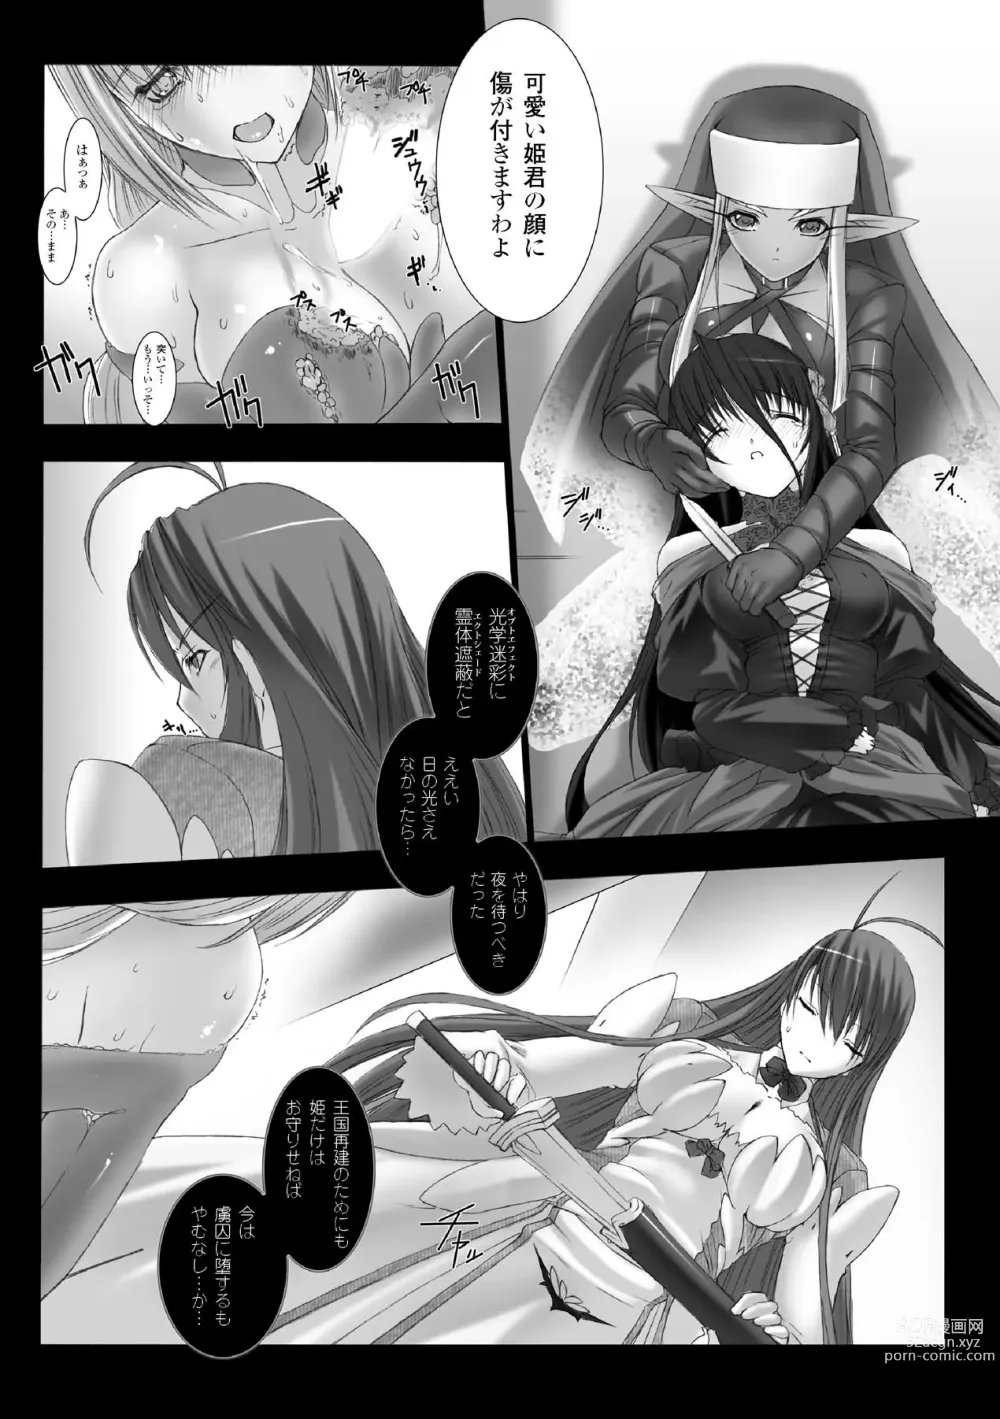 Page 17 of manga Feuerig